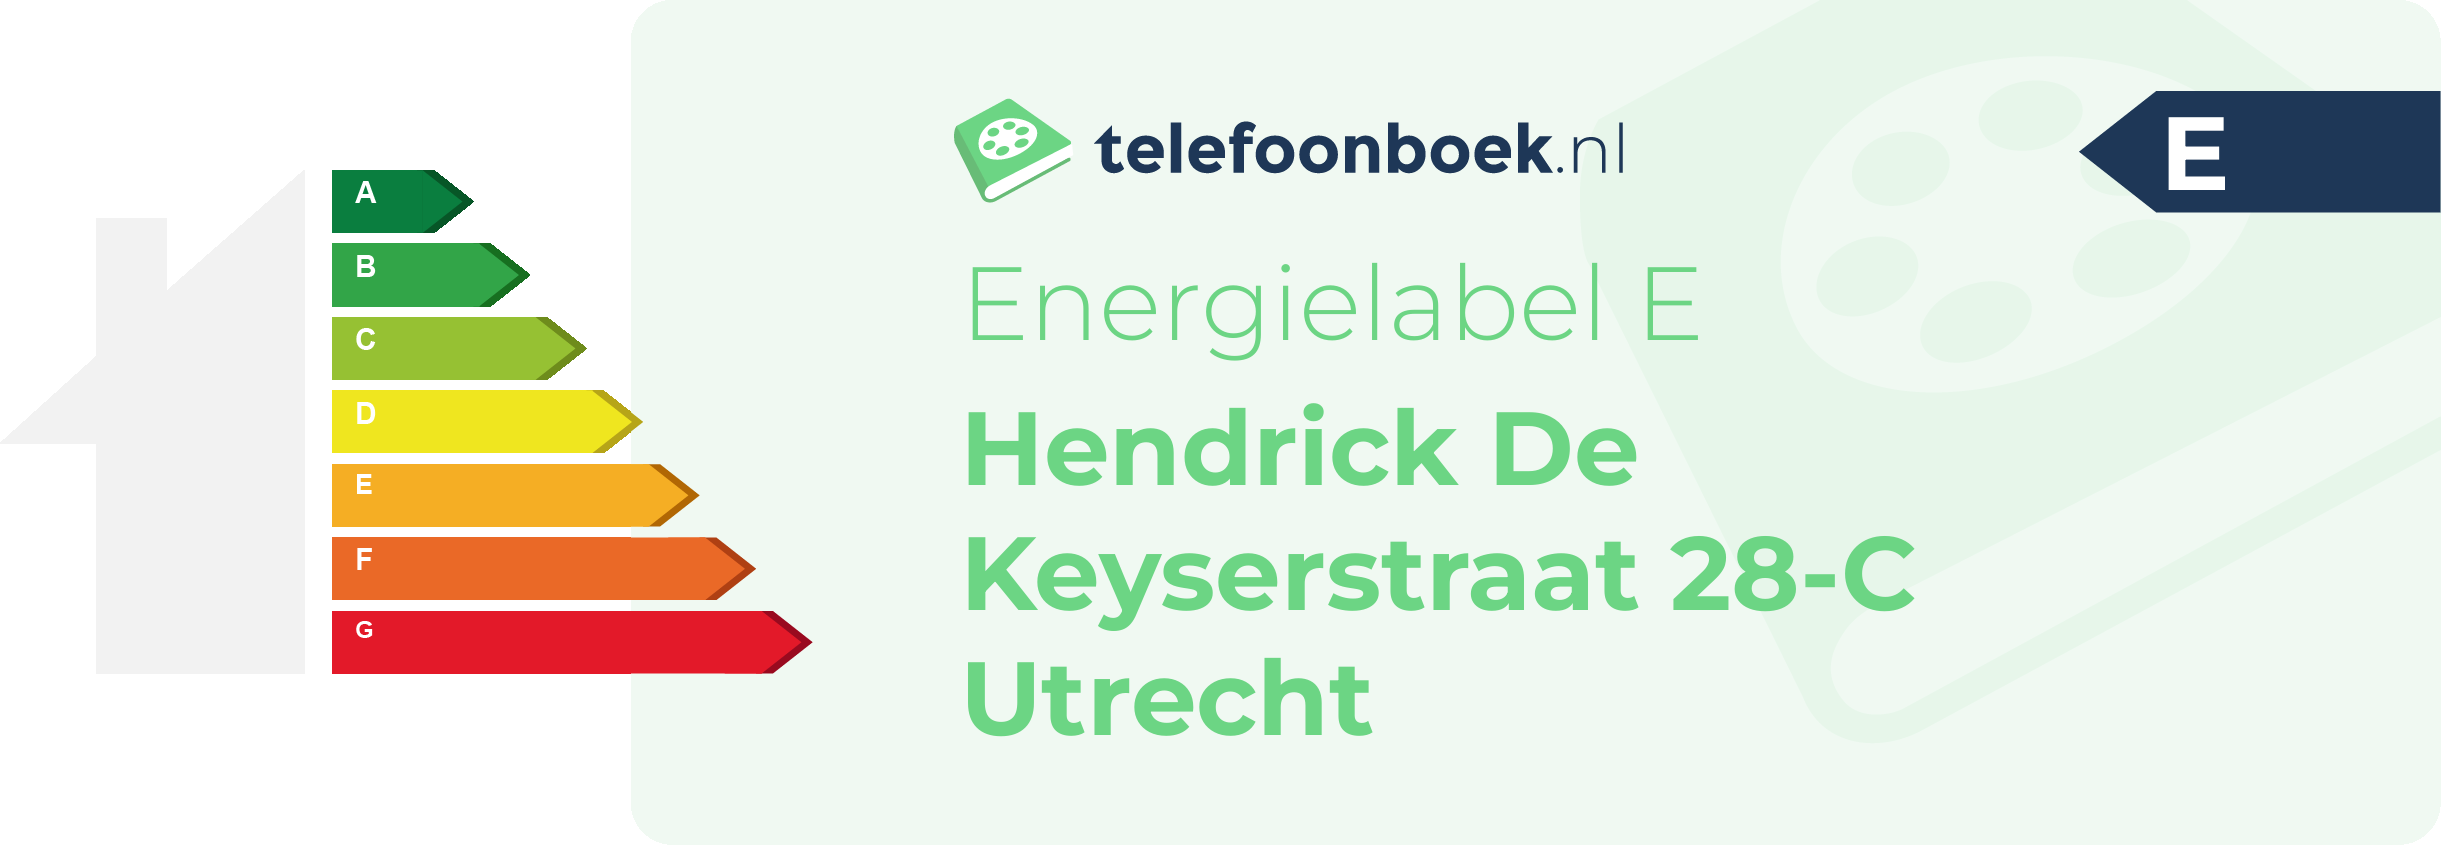 Energielabel Hendrick De Keyserstraat 28-C Utrecht